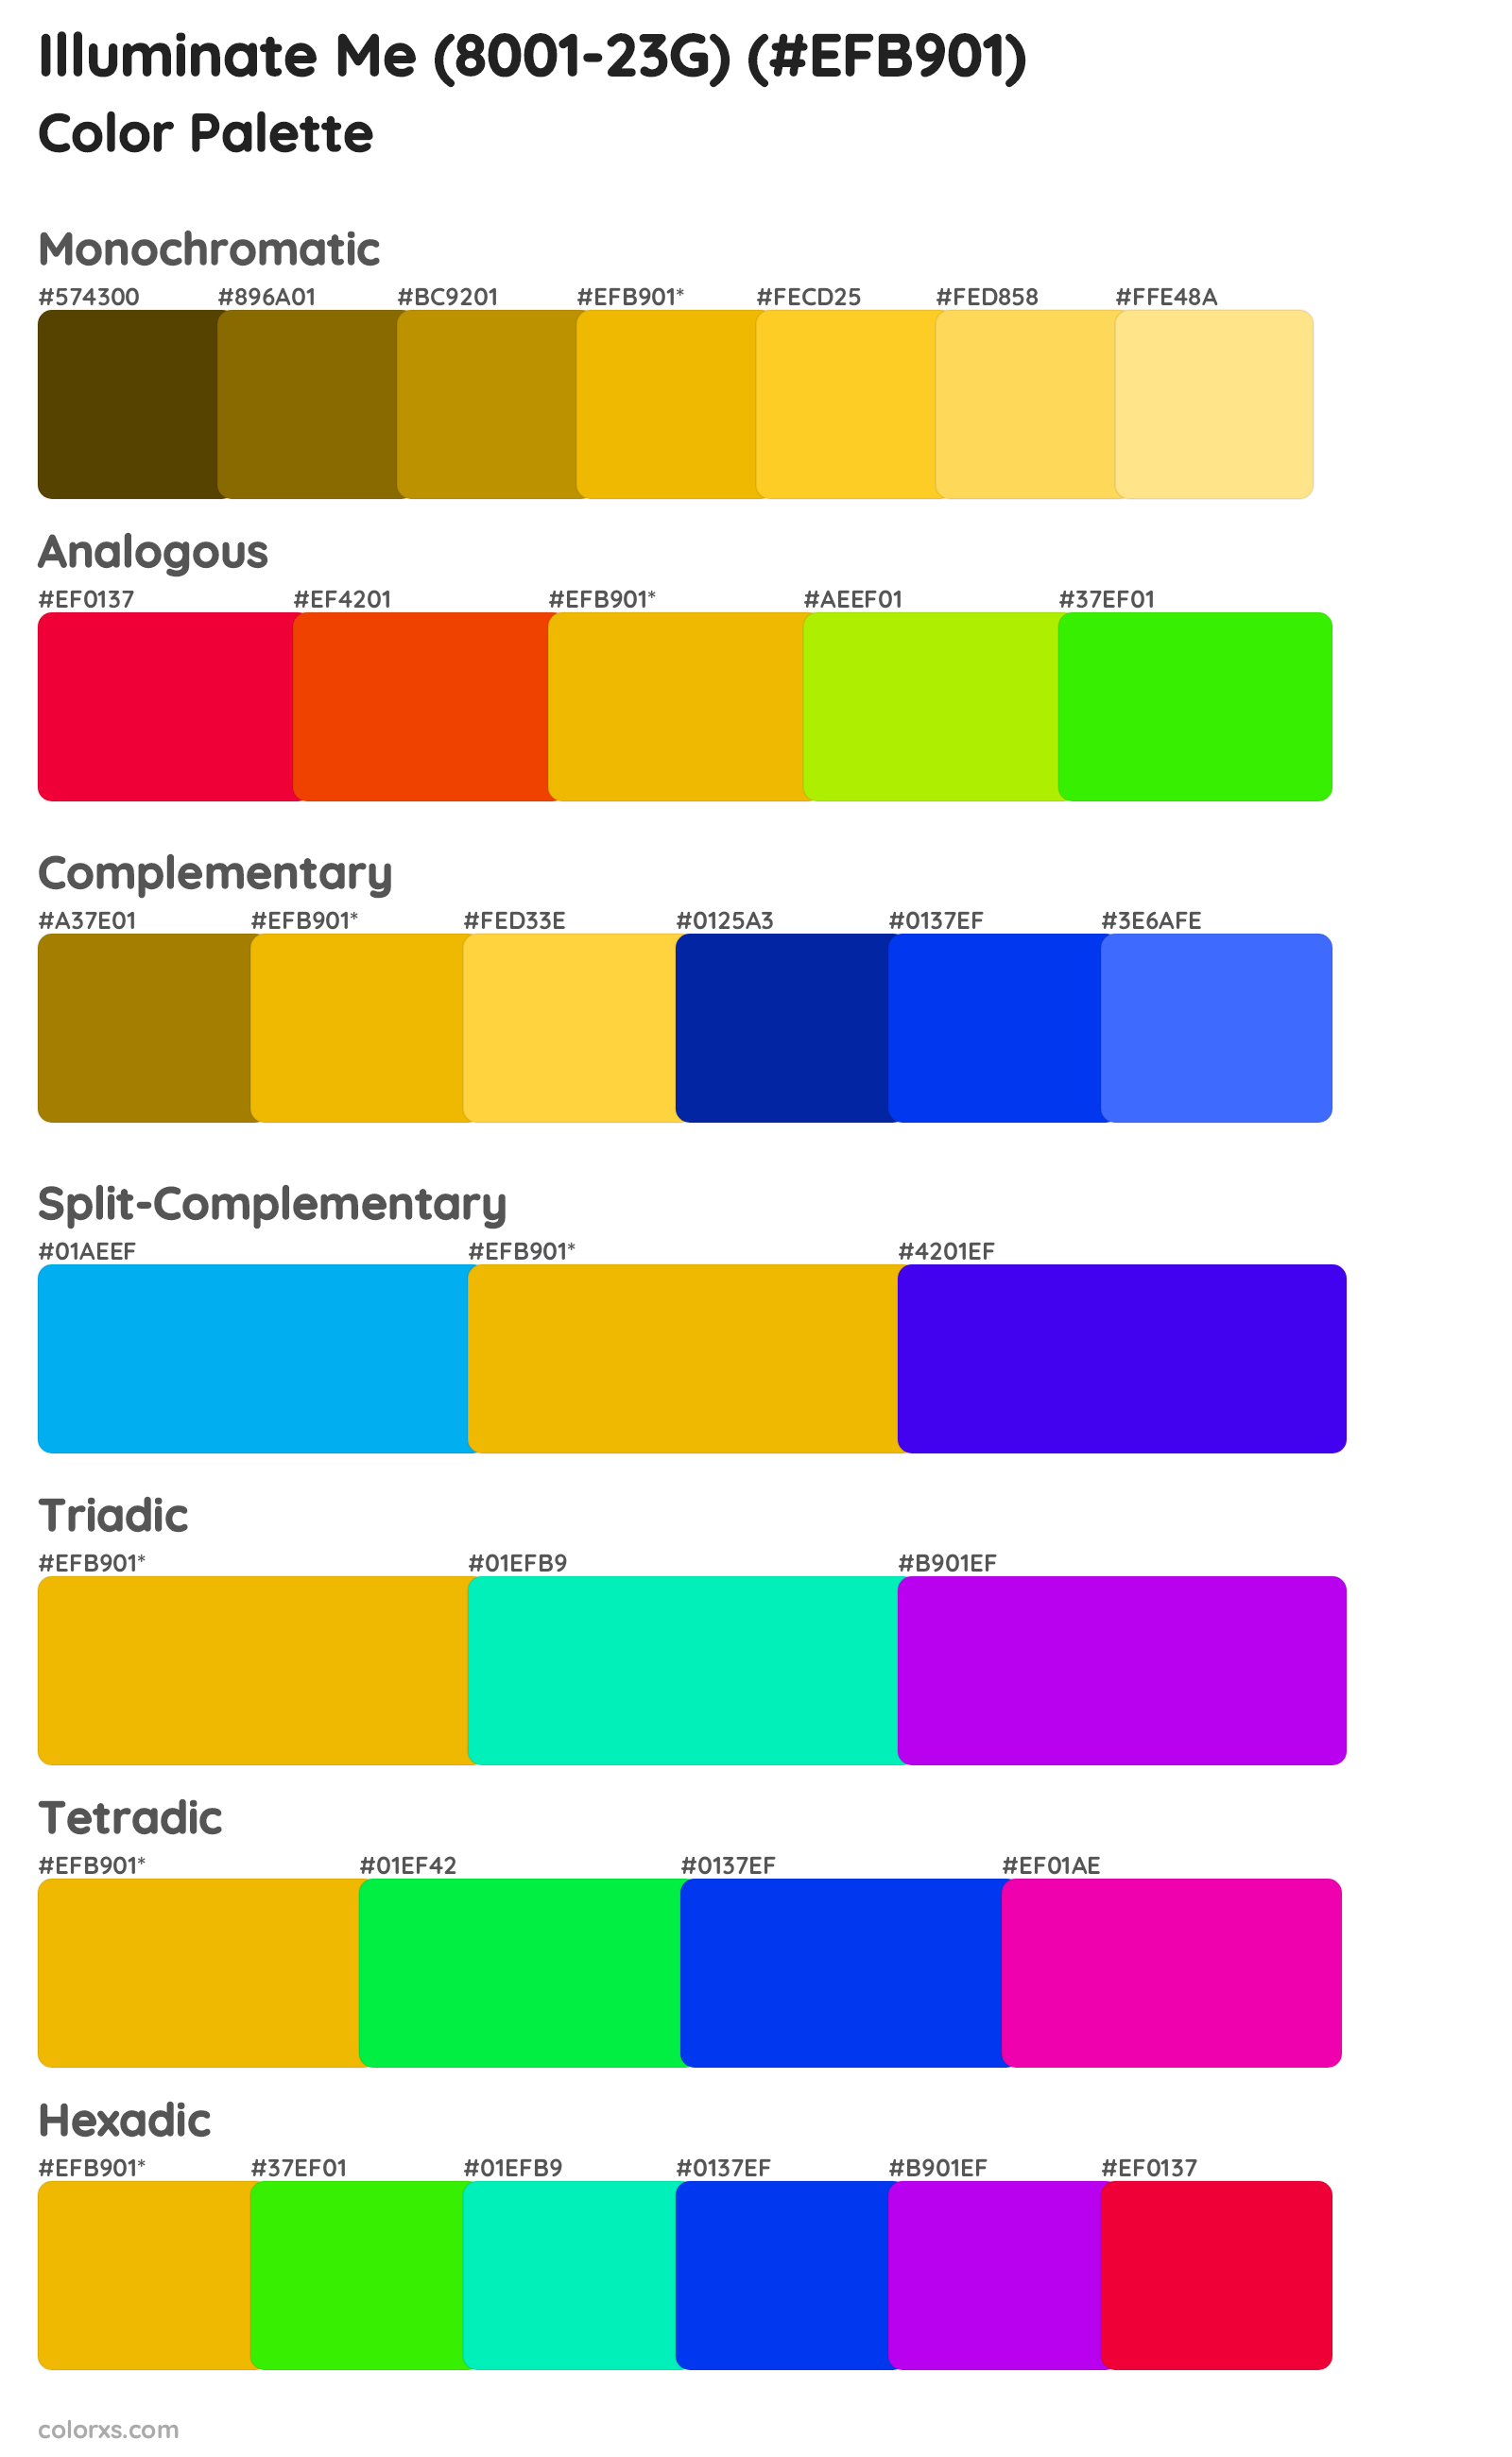 Illuminate Me (8001-23G) Color Scheme Palettes